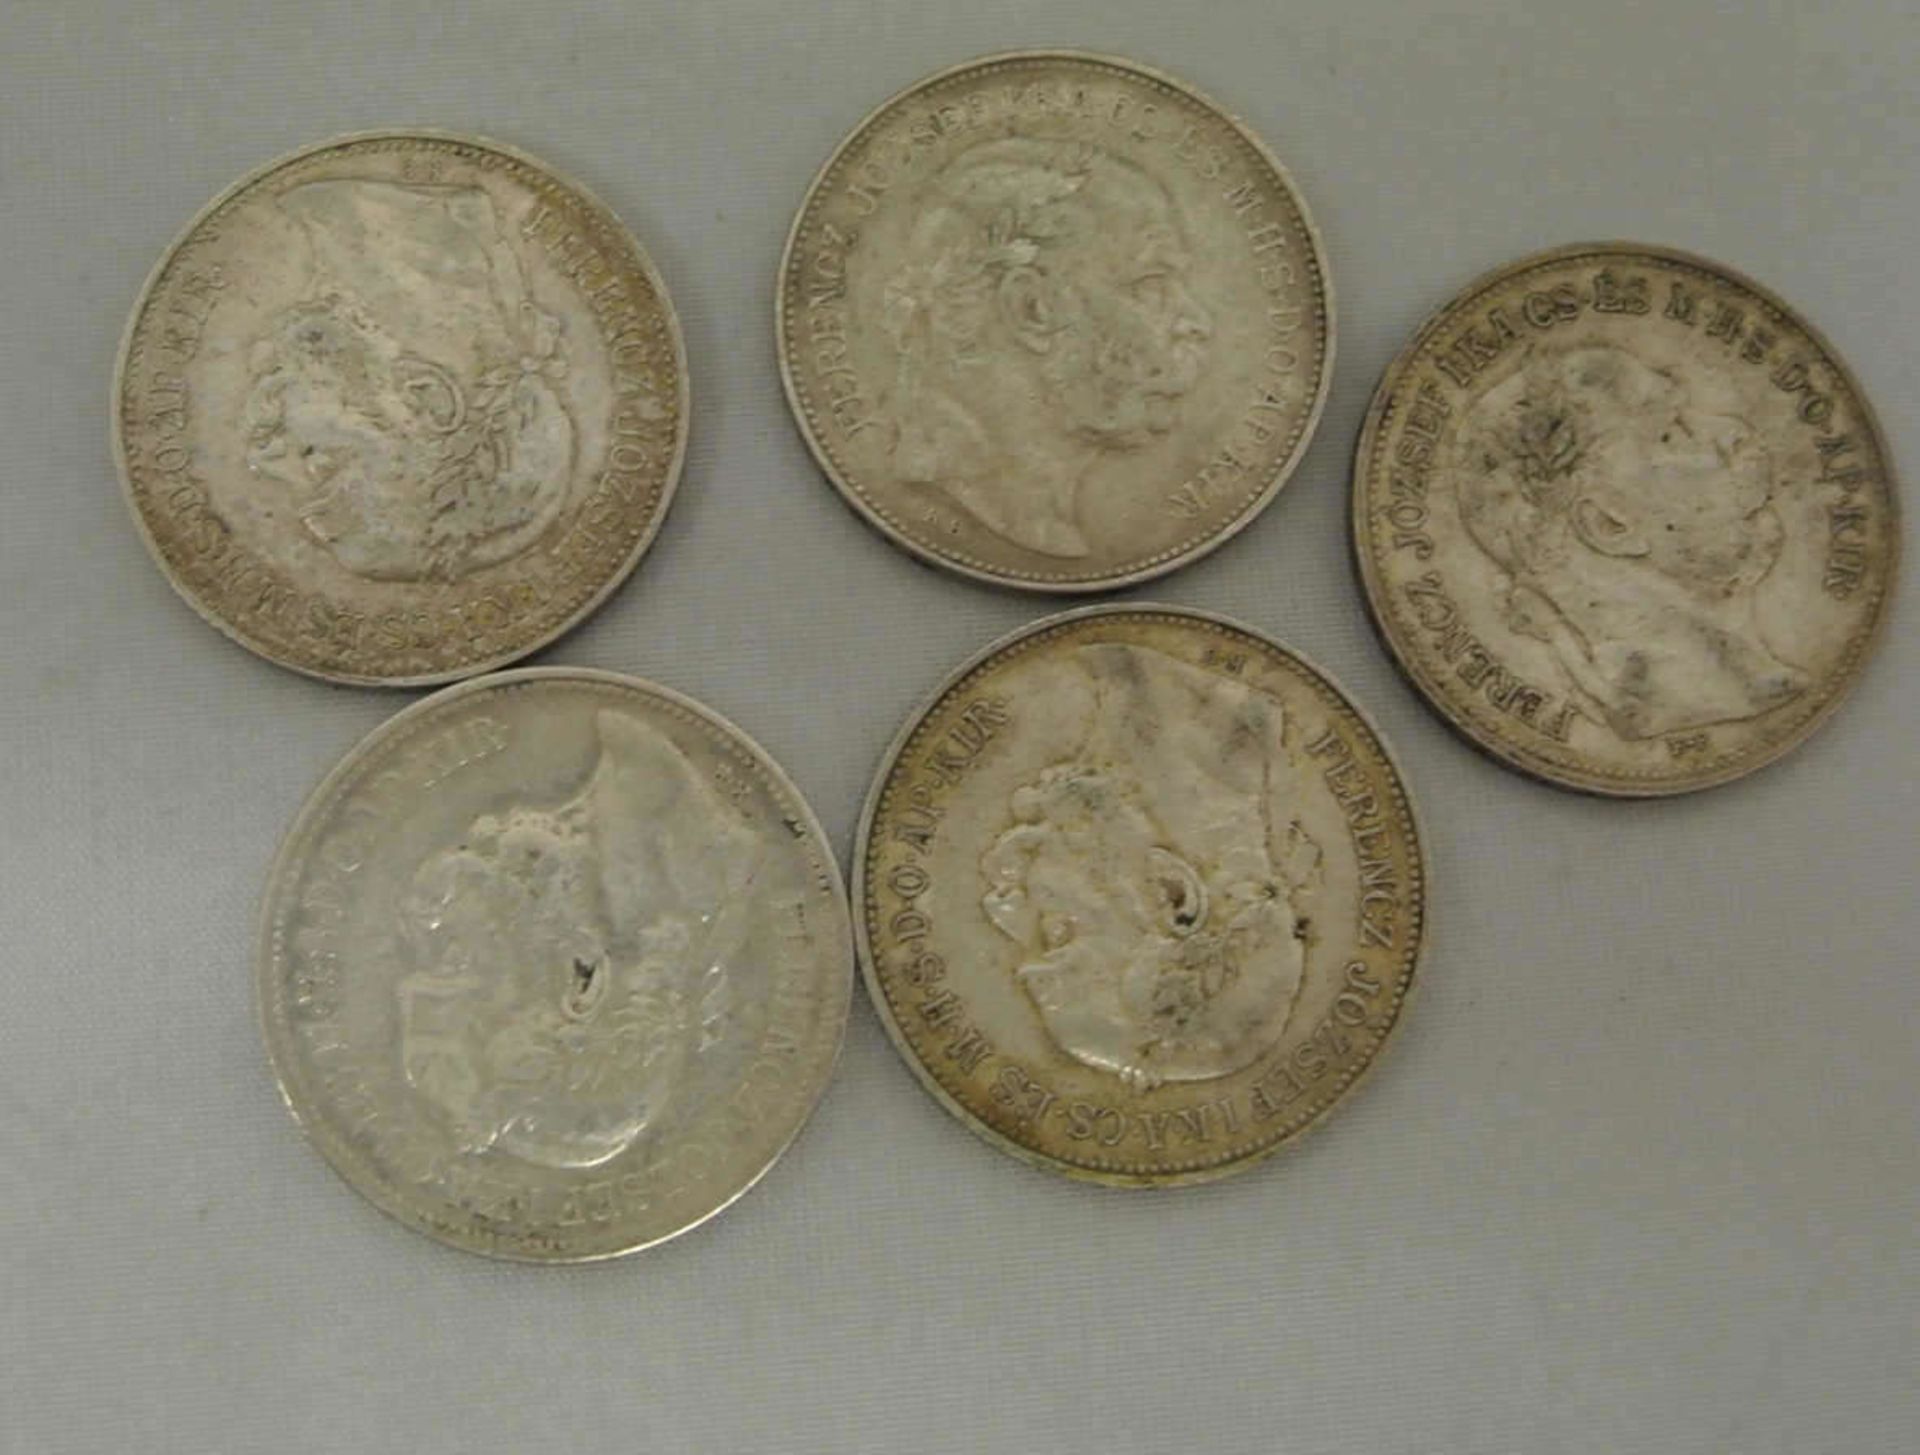 Lot Österreich Silbermünzen, 5x 2 Korona, dabei 3x 1912, sowie 2x 1913. Erhaltung: sehr schön - - Bild 2 aus 2